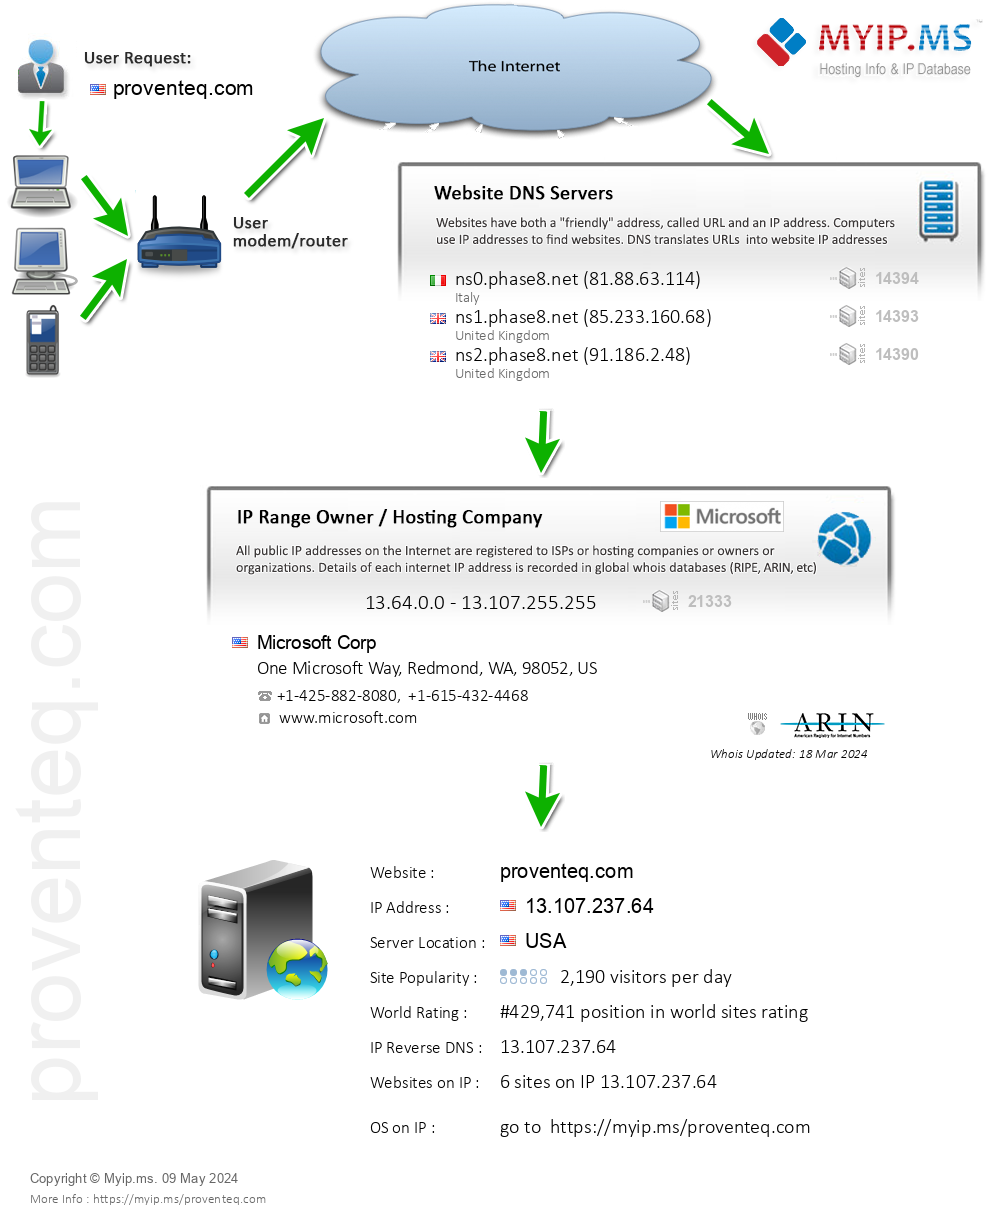 Proventeq.com - Website Hosting Visual IP Diagram